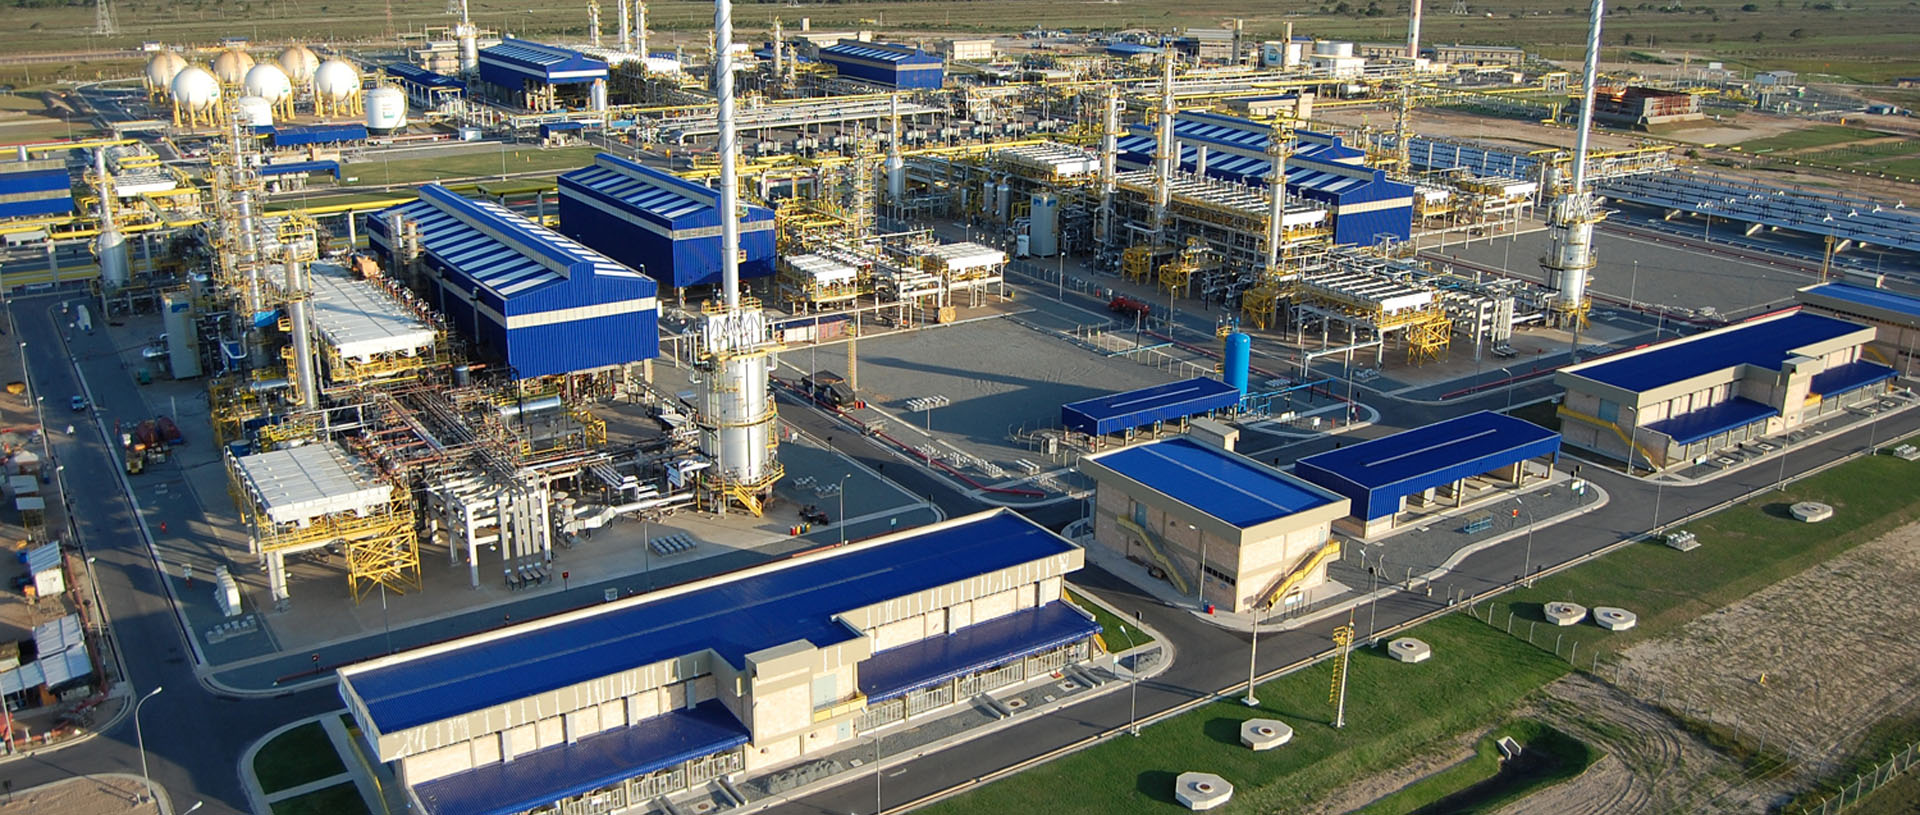 Petrobras prepara 2ª onda de oferta de capacidade de processamento de gás. Na imagem: Vista das instalações e rede de dutos da Unidade de Tratamento de Gás (UTGC) de Cacimbas, em Linhares, no ES (Foto: Divulgação Petrobras)